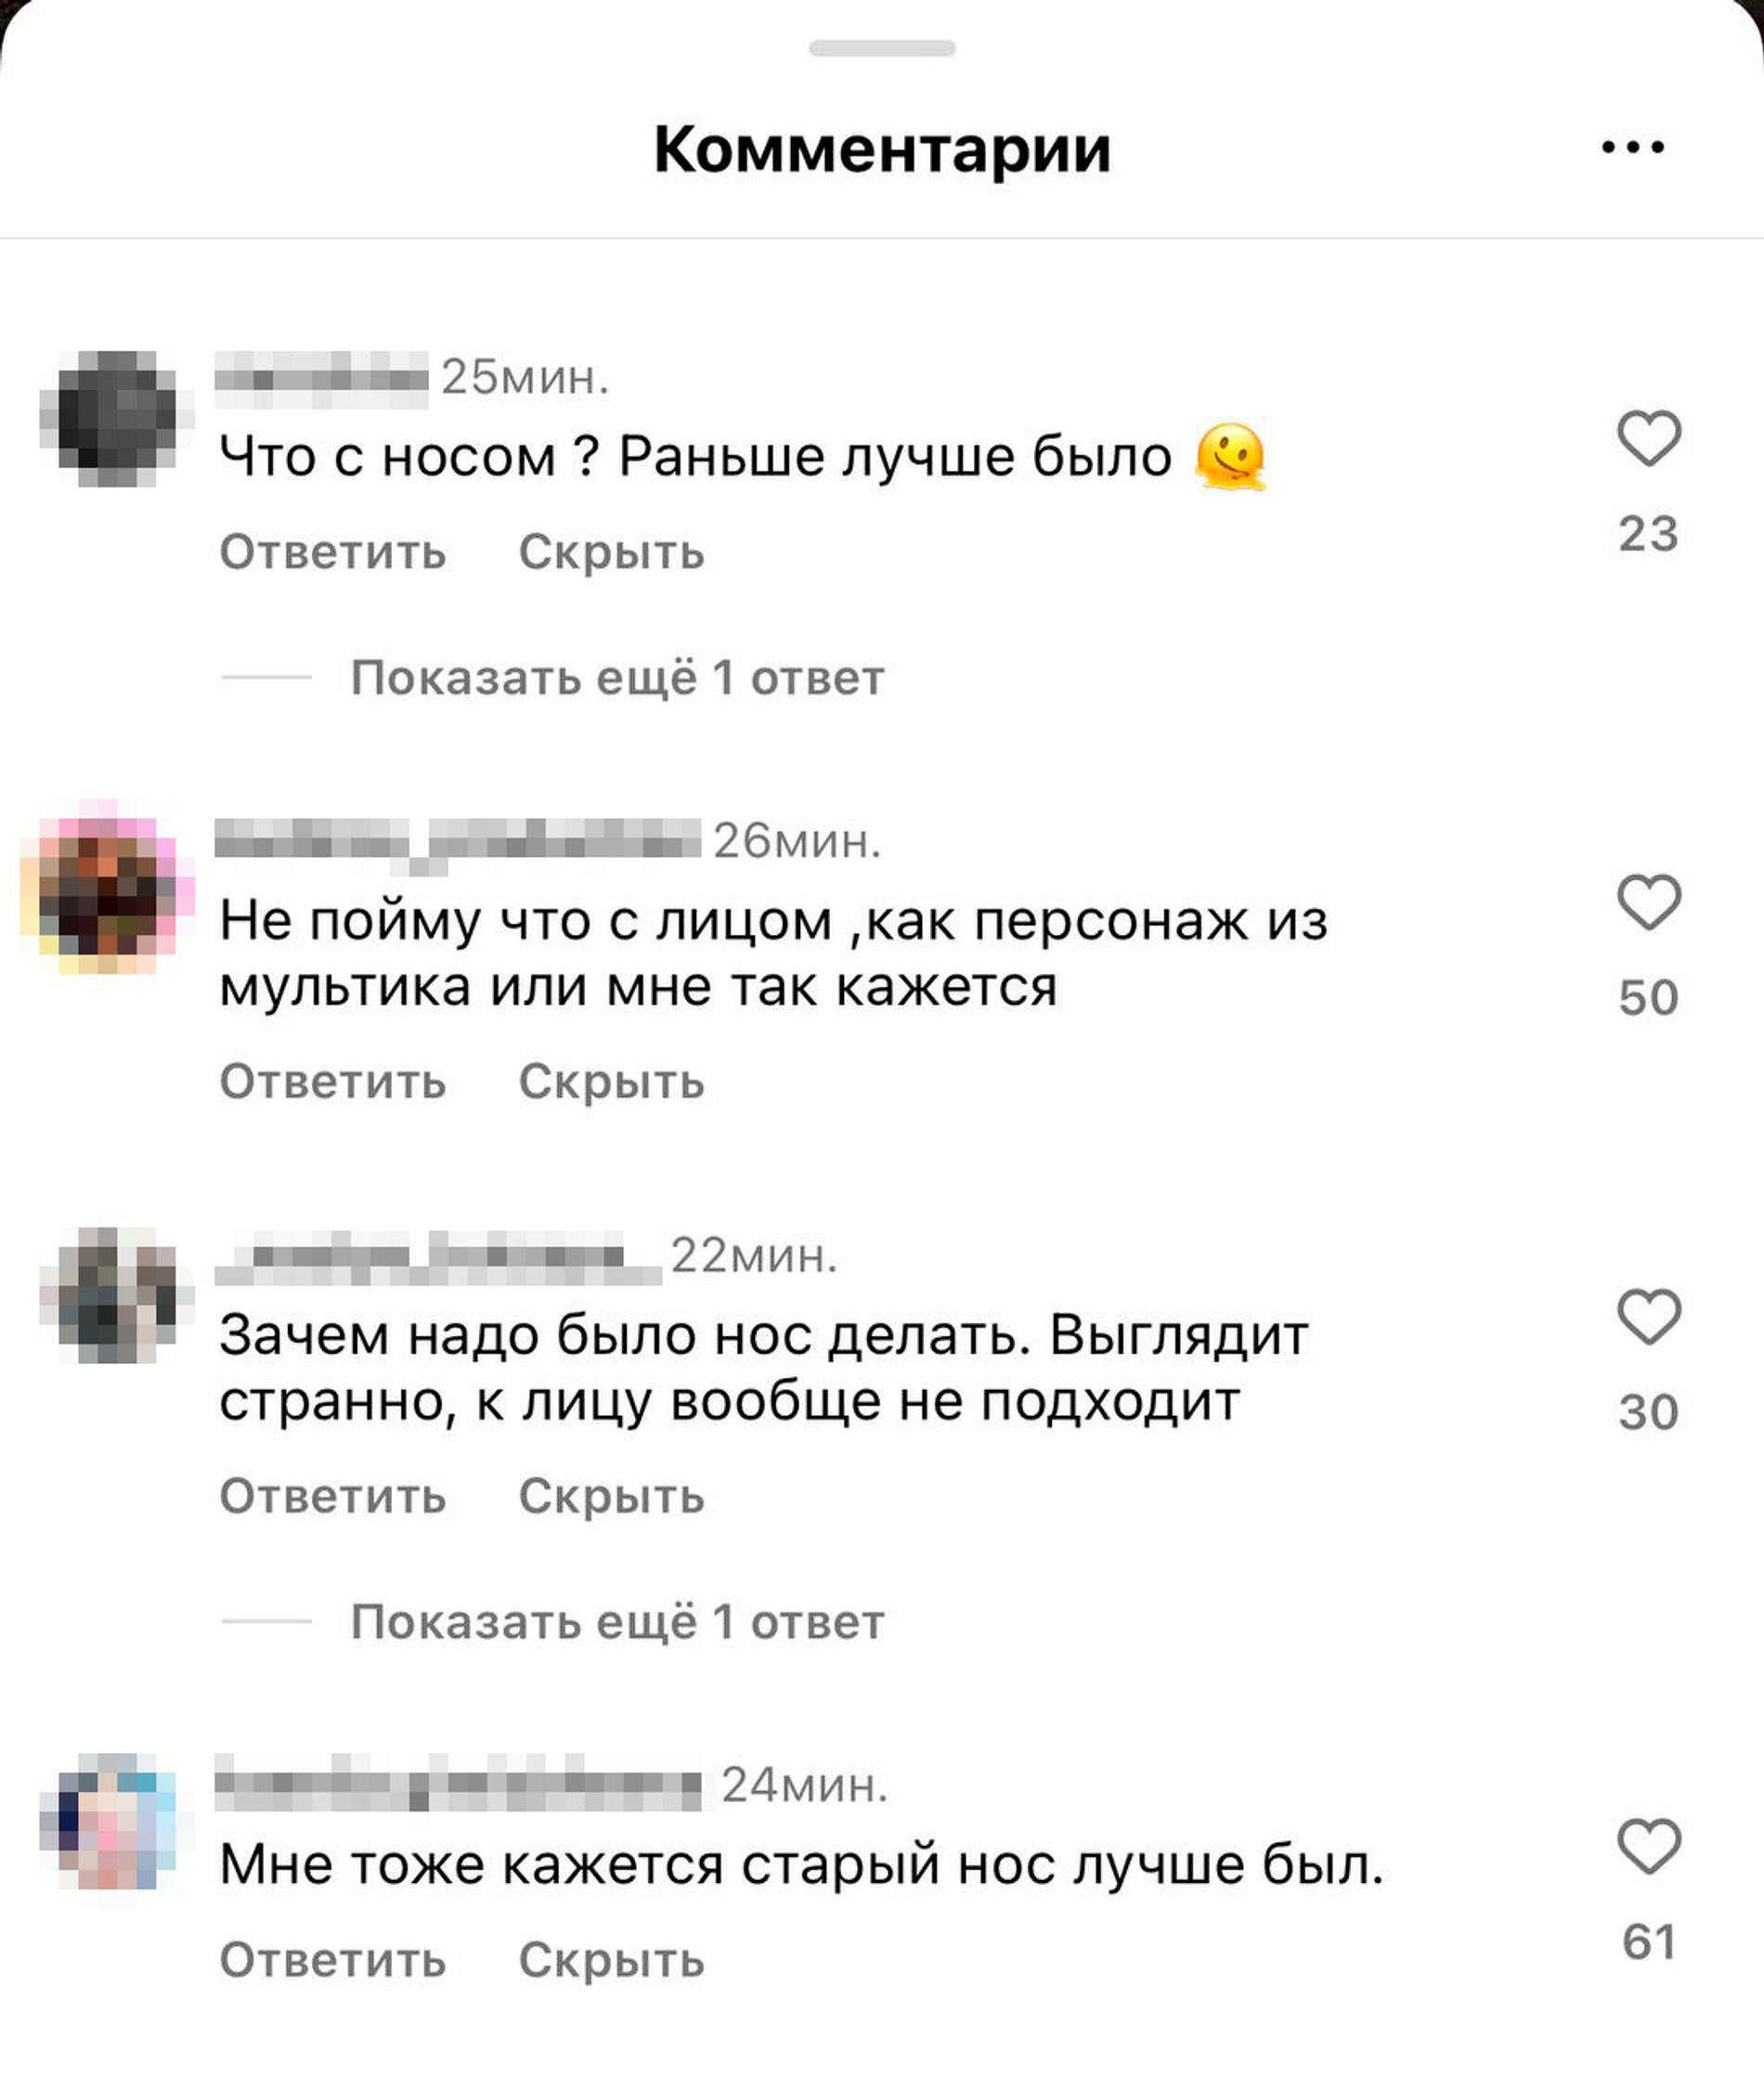 Комментарии под публикацией Артура Бабича в Инстаграме (запрещен в РФ)